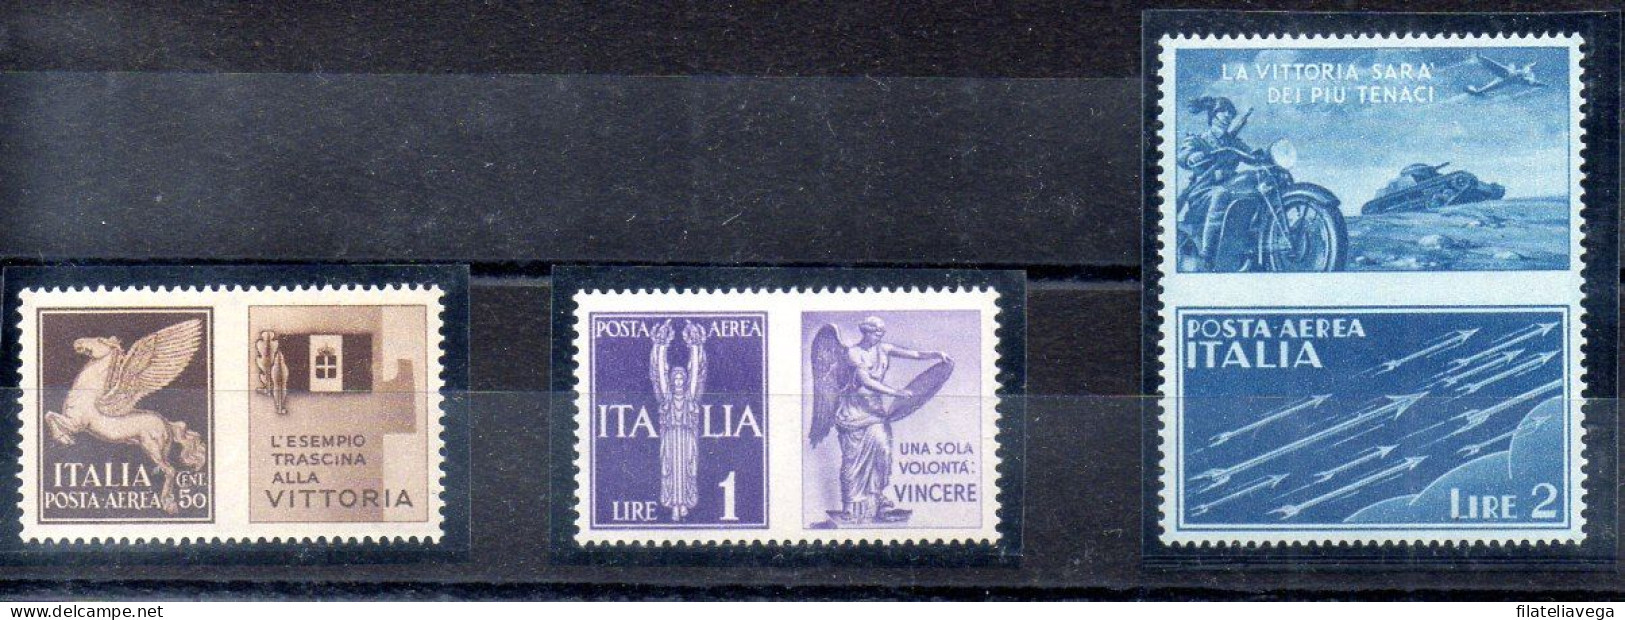 Italia 3 Series "PROPAGANDA DE GUERRA" Año 1942 -NO EMITIDOS- Nº Michel 328P5 + 330P6 + 331P7 * - Propagande De Guerre